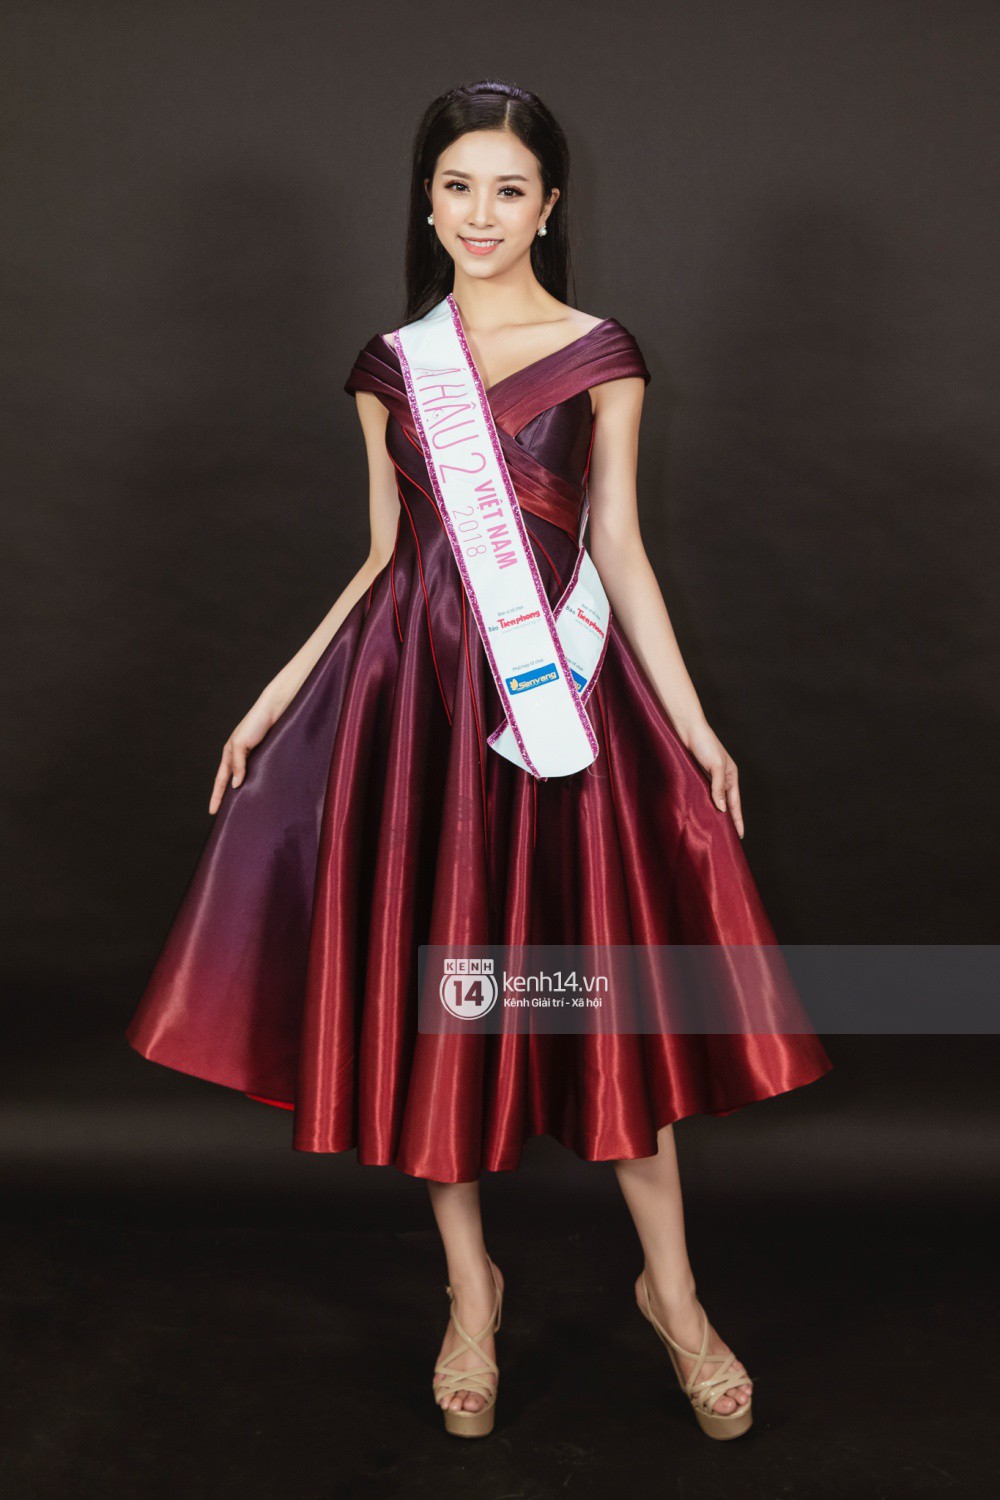 Ngắm cận vẻ đẹp của Top 3 Hoa hậu Việt Nam 2018: Mỹ nhân 2000 được khen sắc sảo, 2 nàng Á mười phân vẹn mười-13